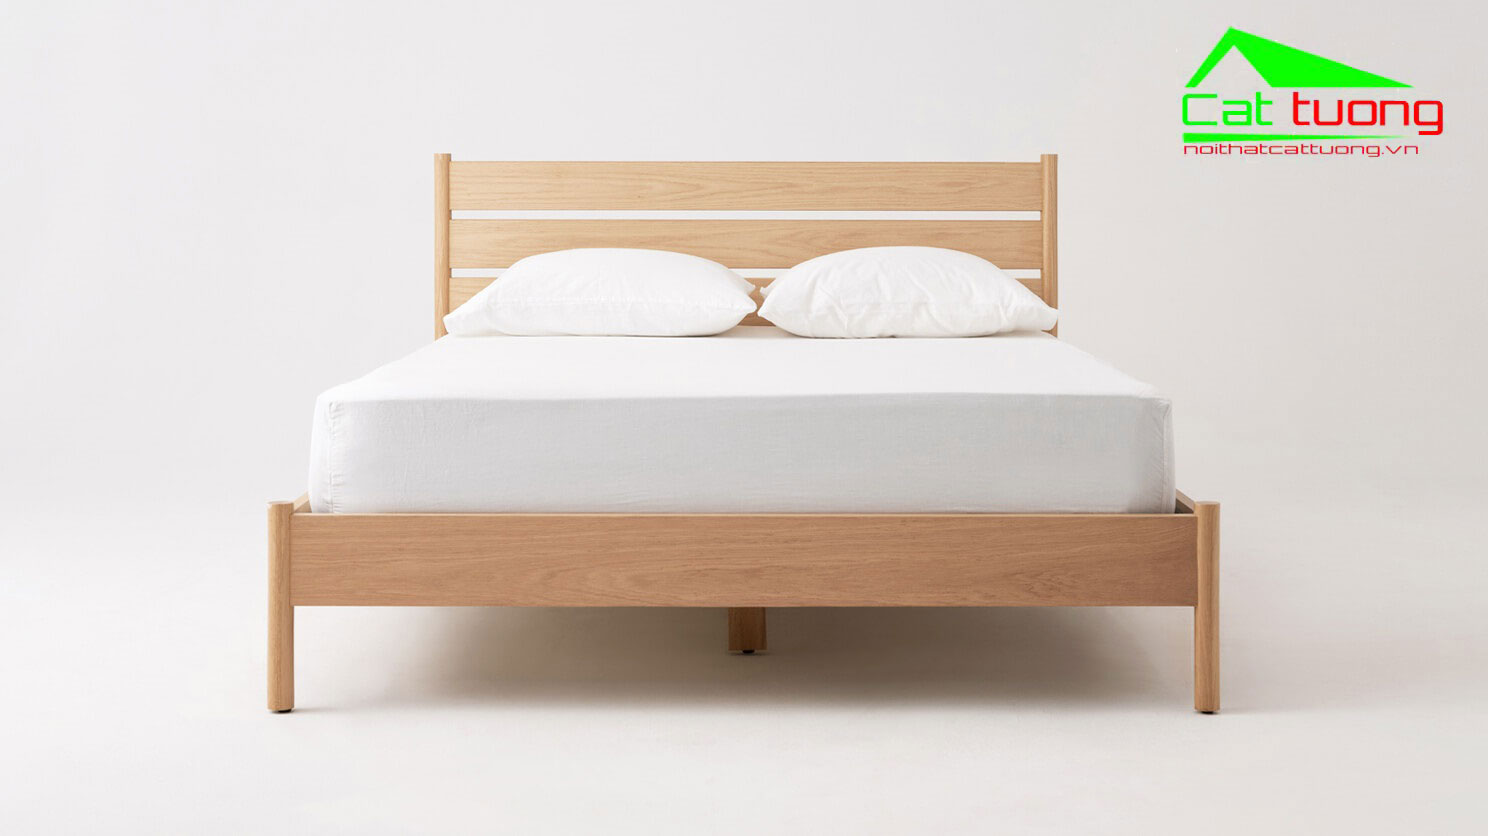 Giá giường ngủ bằng gỗ